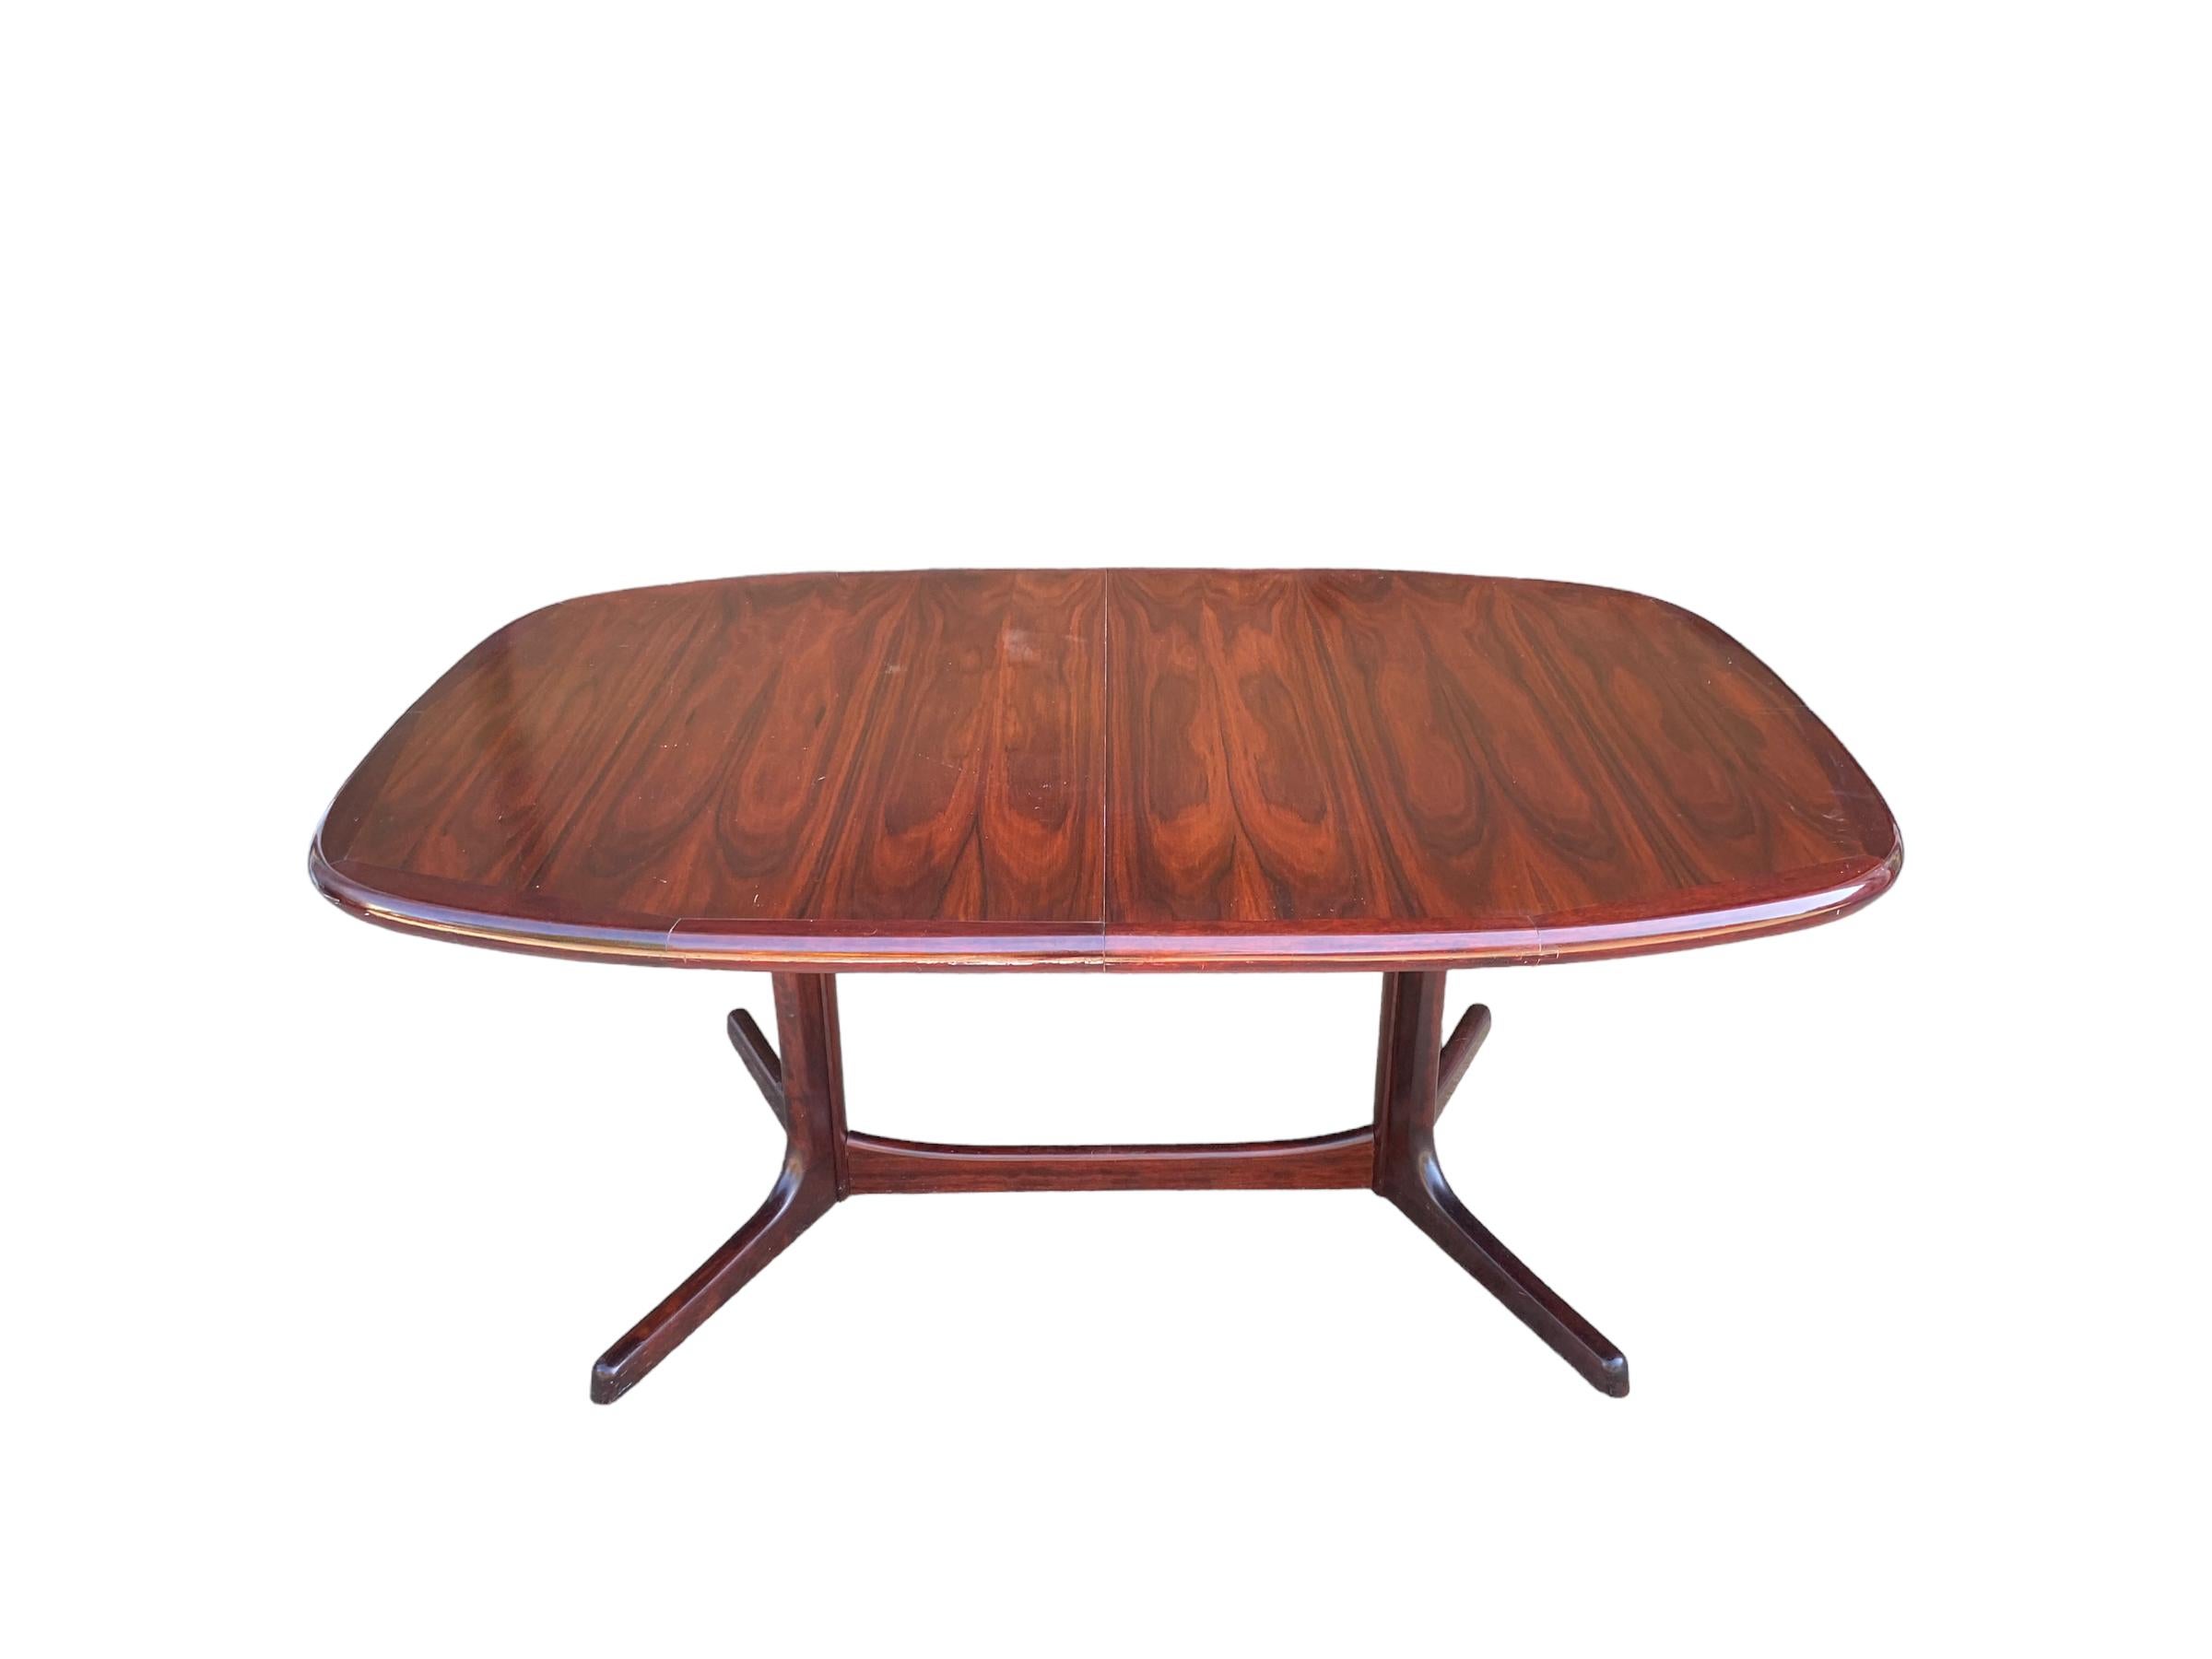 Table de salle à manger en bois de rose par Dyrlund, Danemark. Cette table ovale présente un grain étonnant et une couleur riche et uniforme de bois de rose. La table a deux feuilles qui peuvent s'ajouter jusqu'à 40